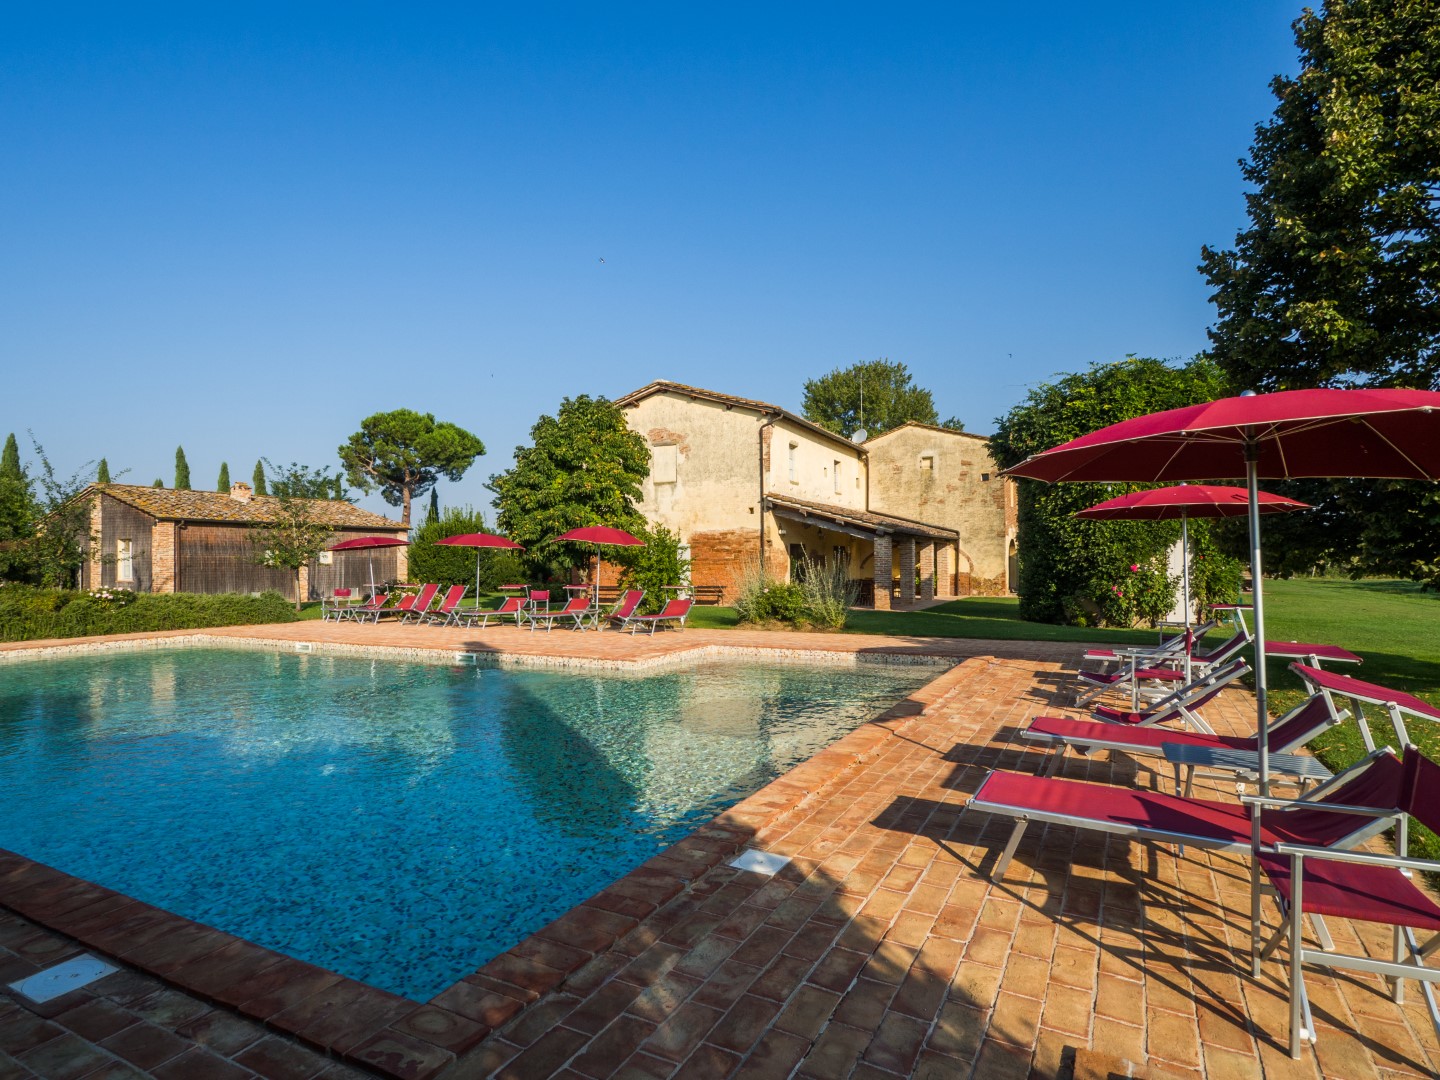 445_54cdf24_Foresteria di Fontarronco, vakantiehuis met zwembad, Toscane 9 (43)